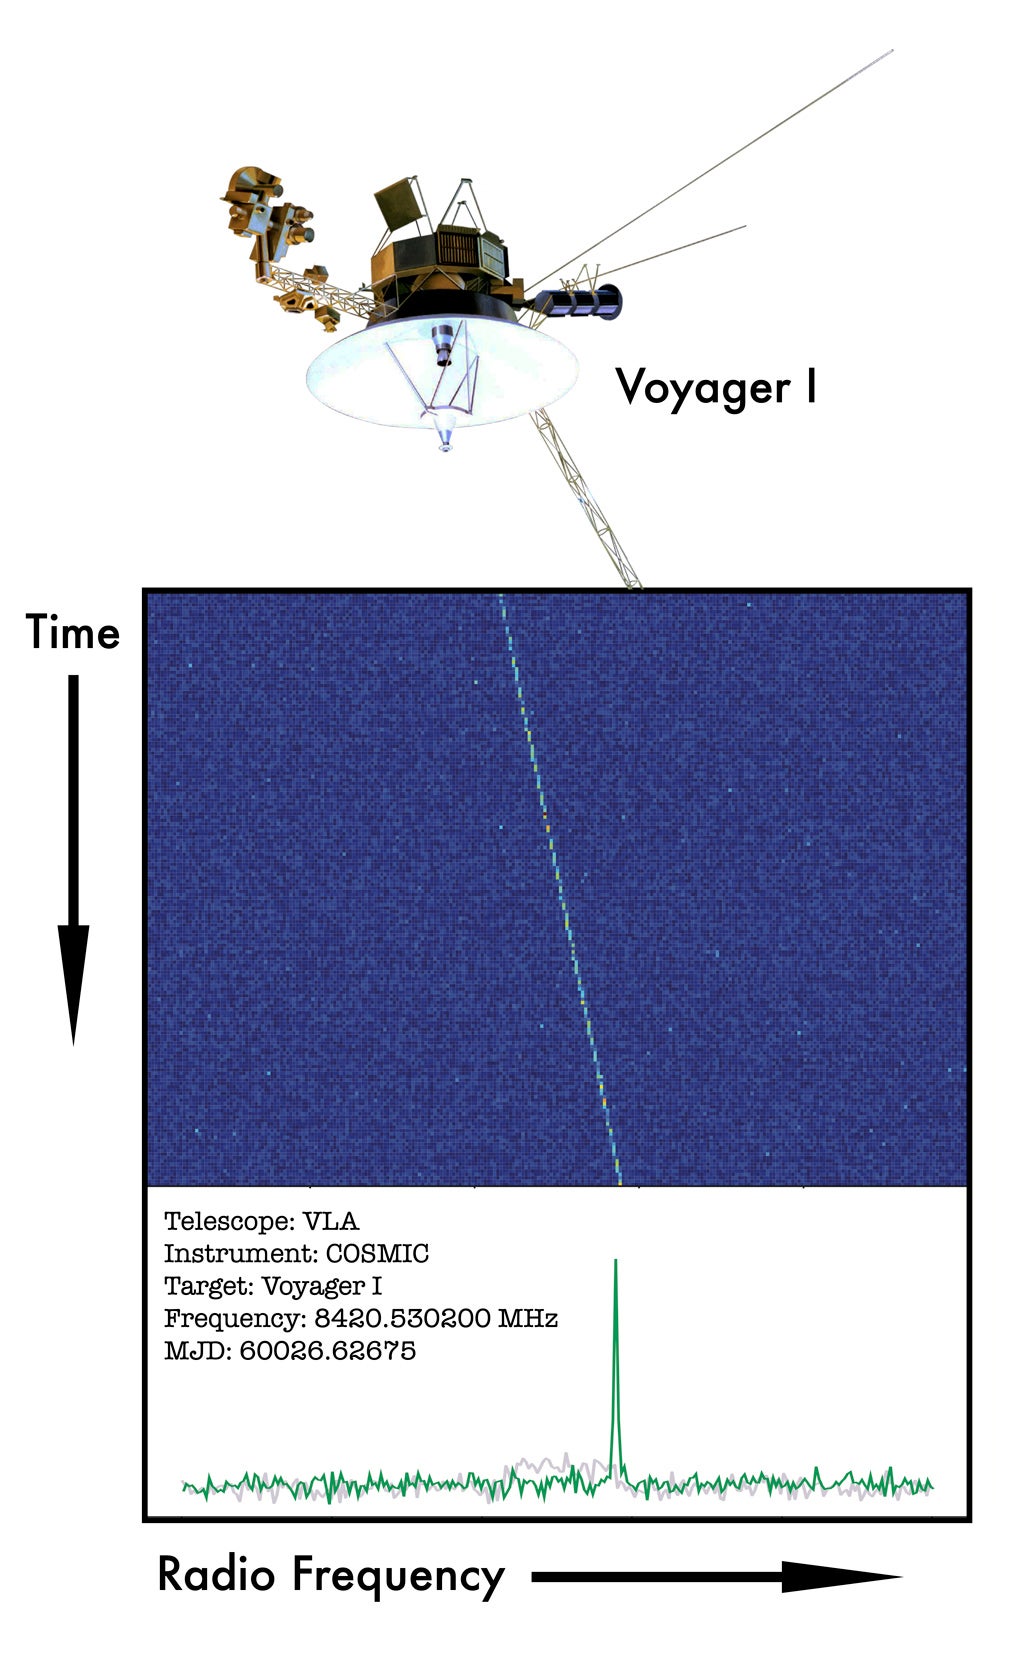 تم اختبار COSMIC على المركبة الفضائية فوييجر 1 ، التي تمكنت من اكتشاف إشاراتها.